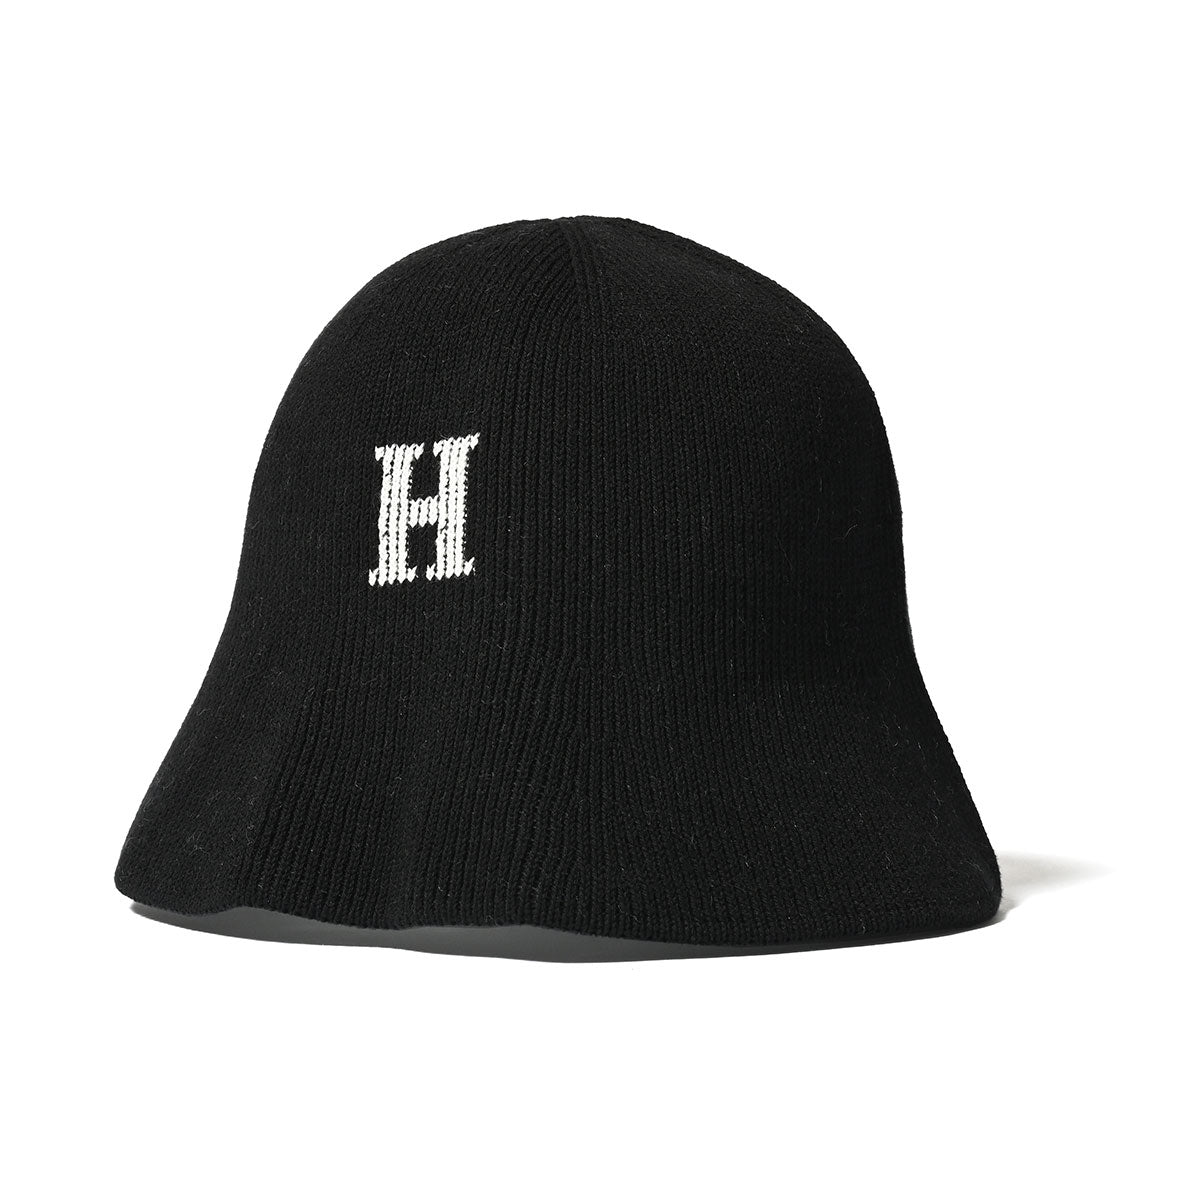 HOMEGAME - H LOGO COTTON KNIT HAT BLACK【HG241415】